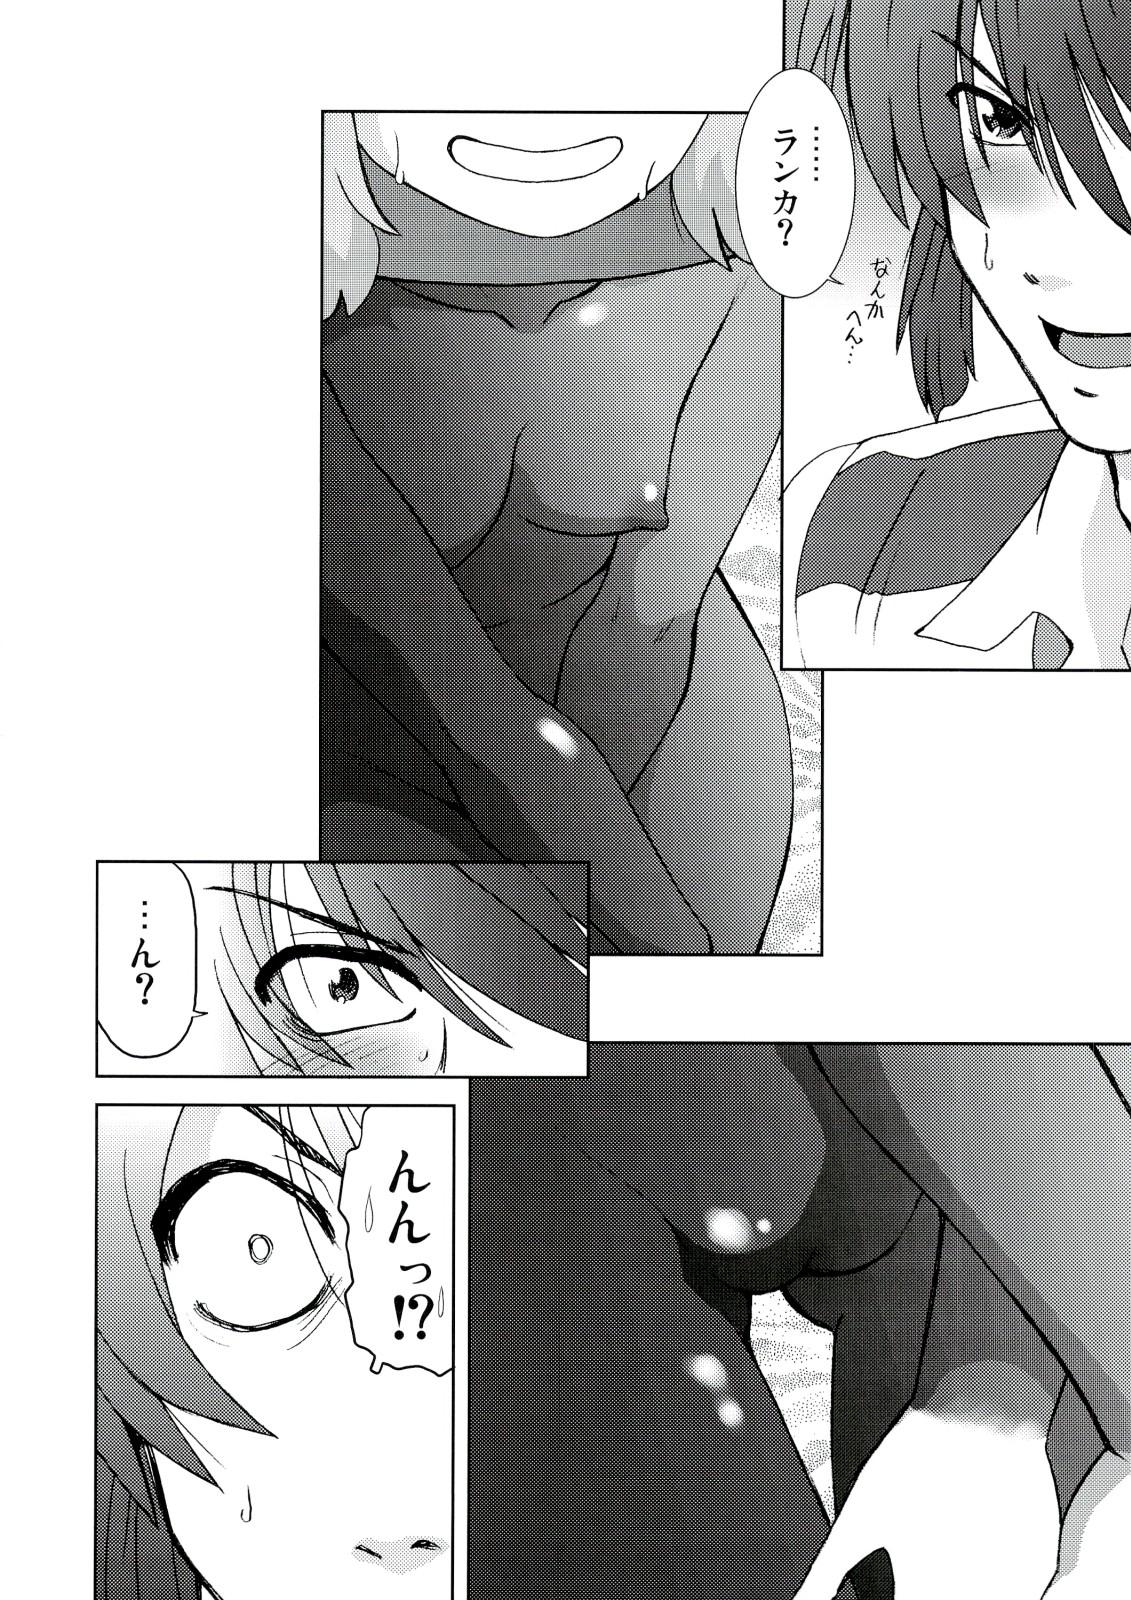 Rubbing Kishou Tenketsu 6 - Macross frontier Dick Sucking - Page 9